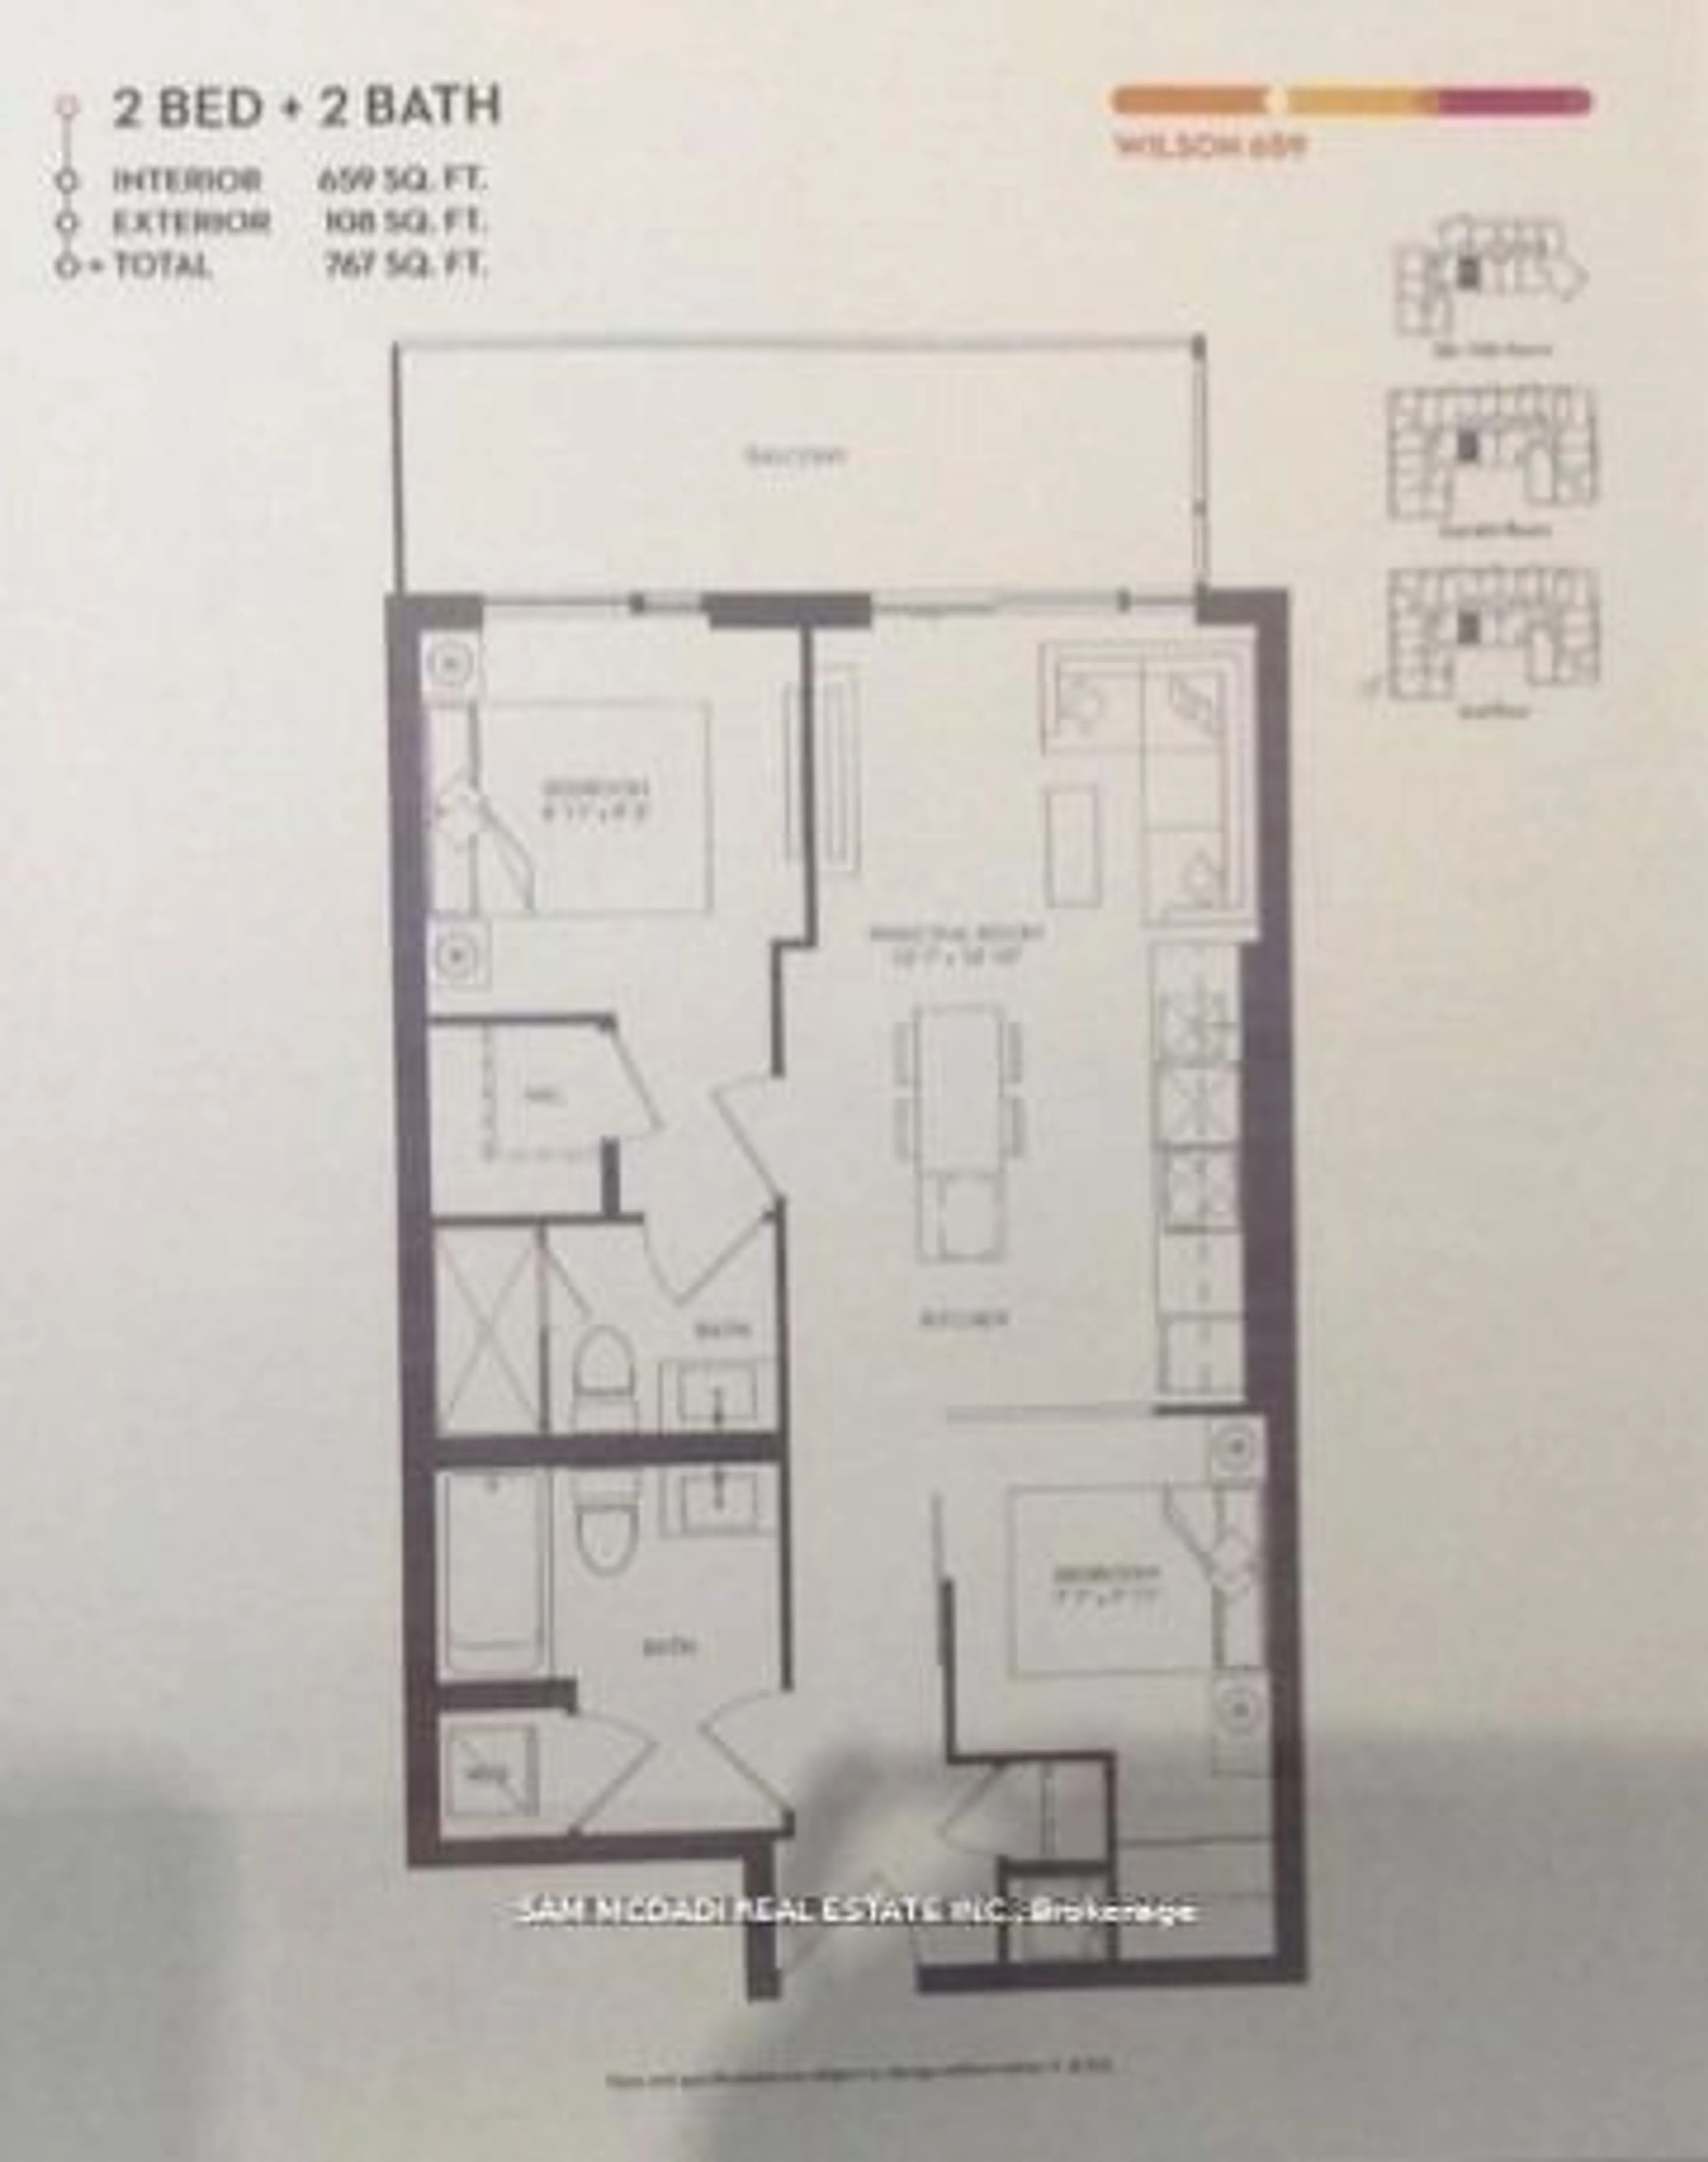 Floor plan for 8 Tippett Rd #1009, Toronto Ontario M3H 2V1